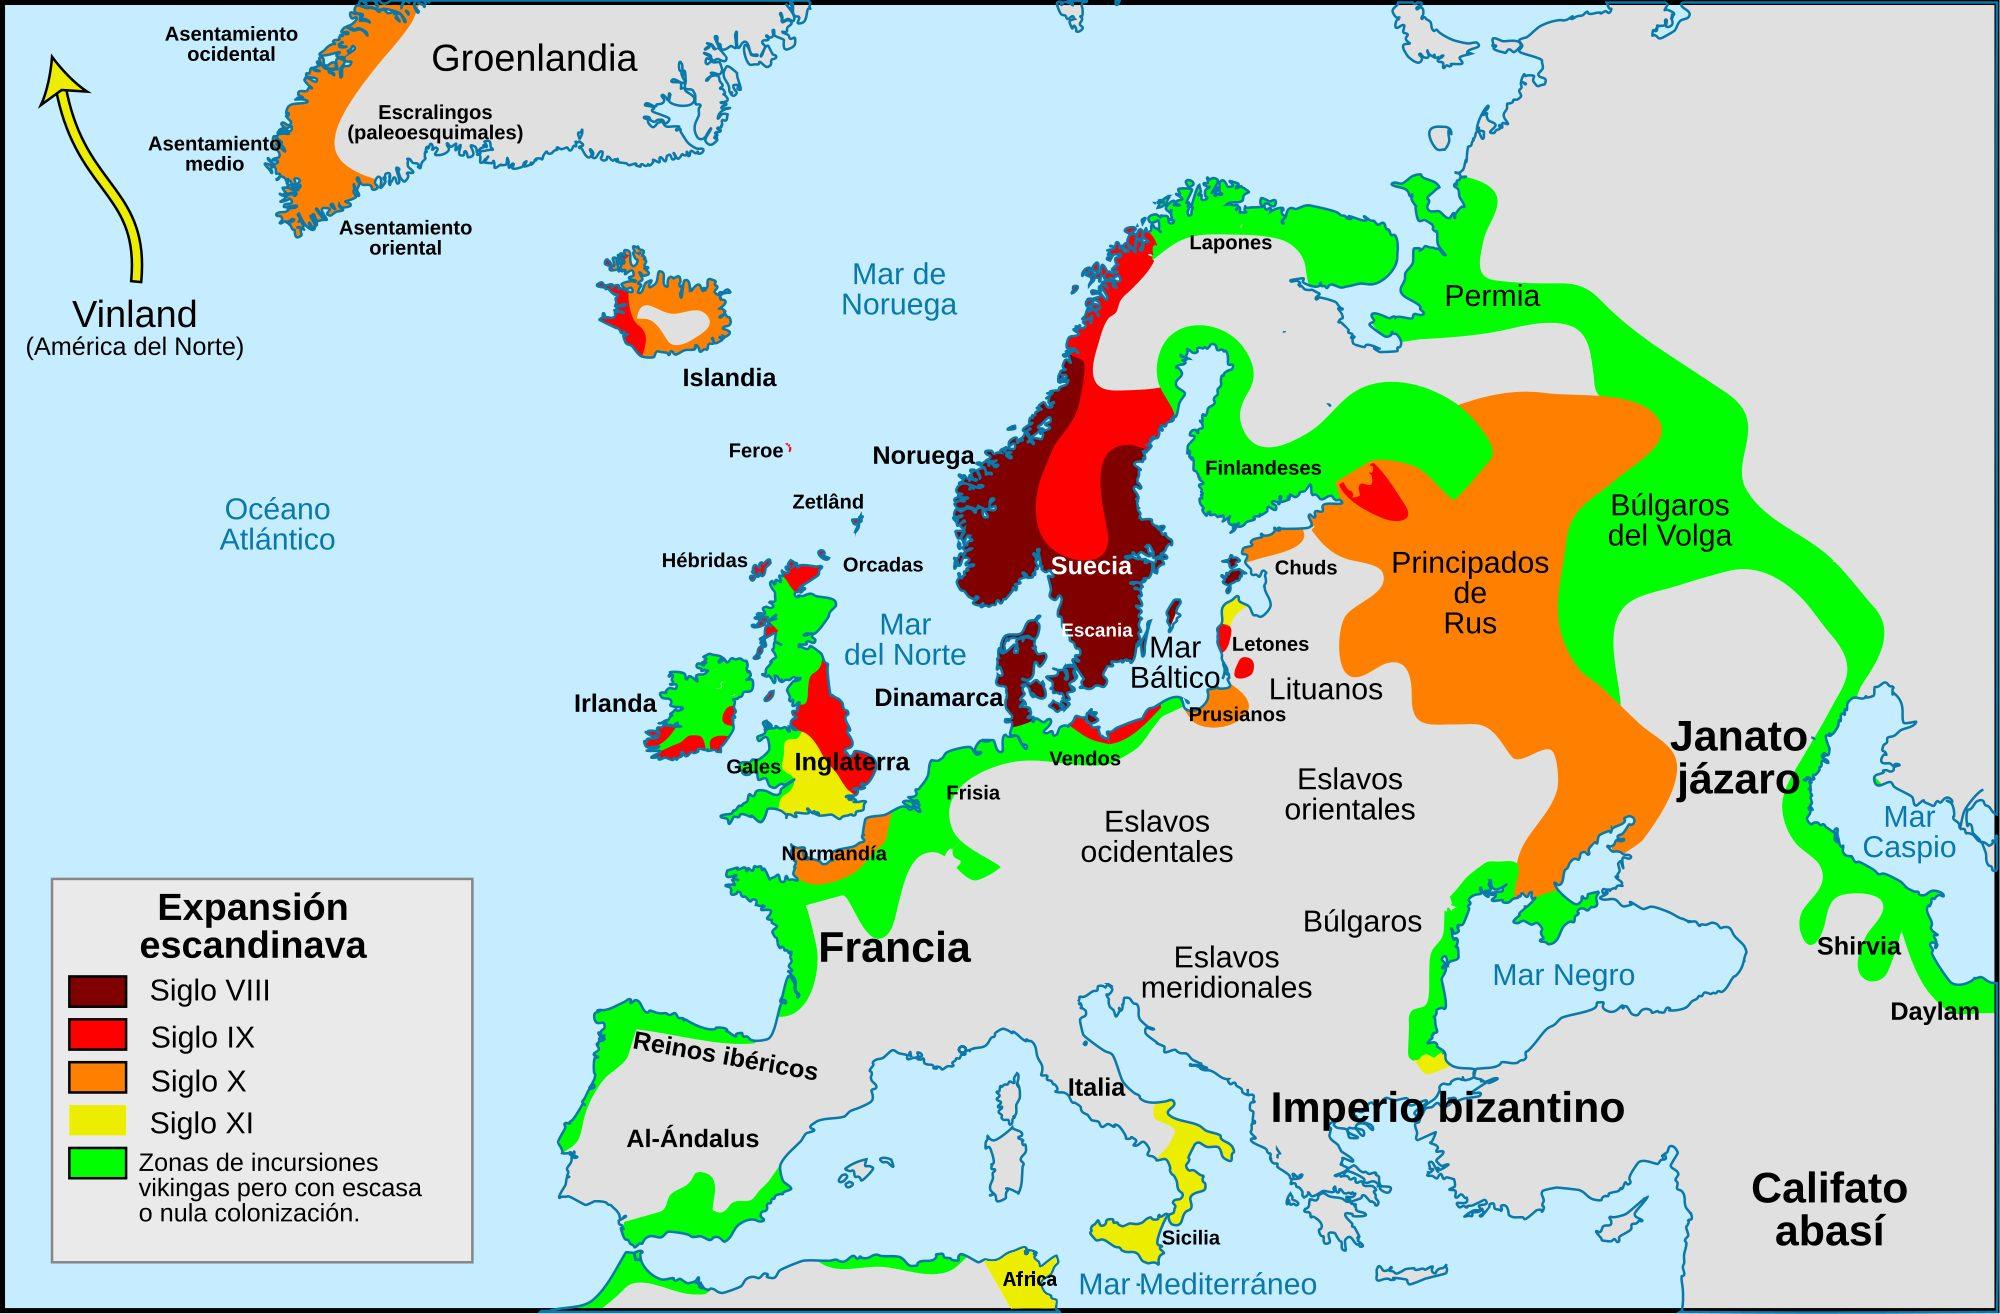 Expansión escandinava https://es.wikipedia.org